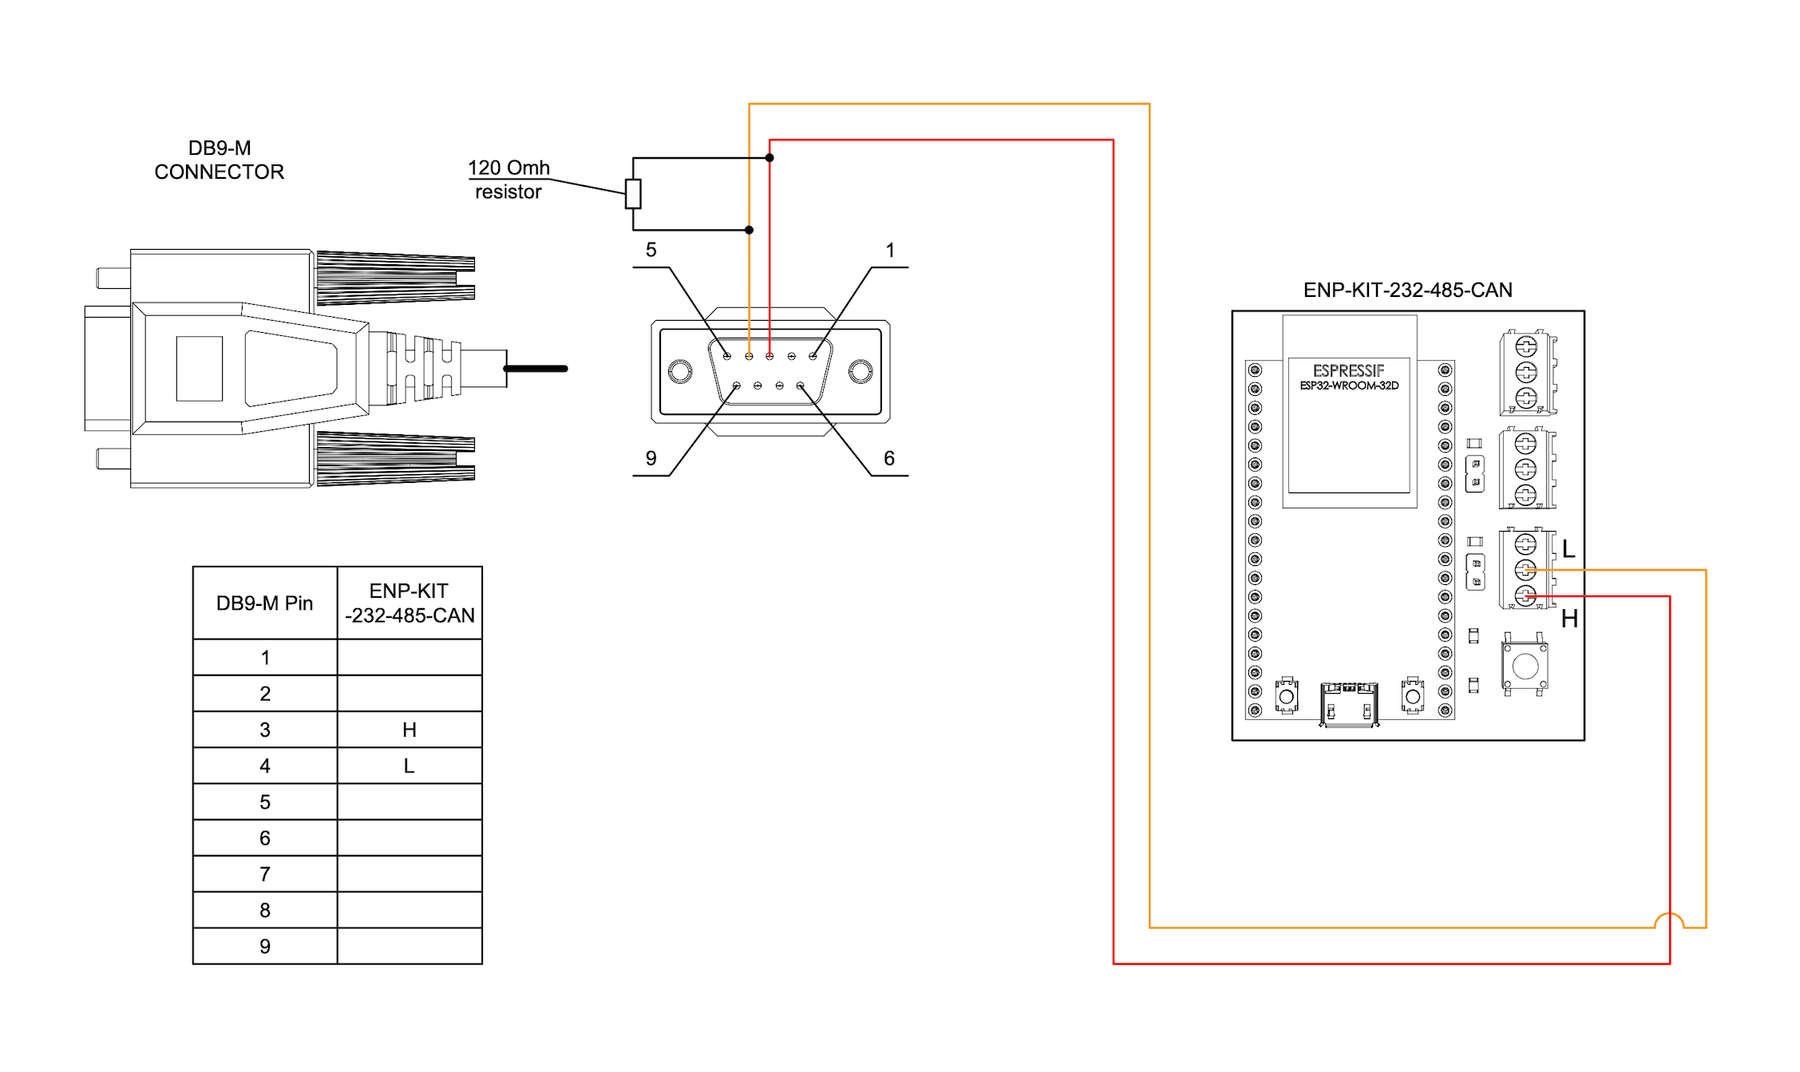 Connection scheme for ENP-KIT-232-485-CAN communication module